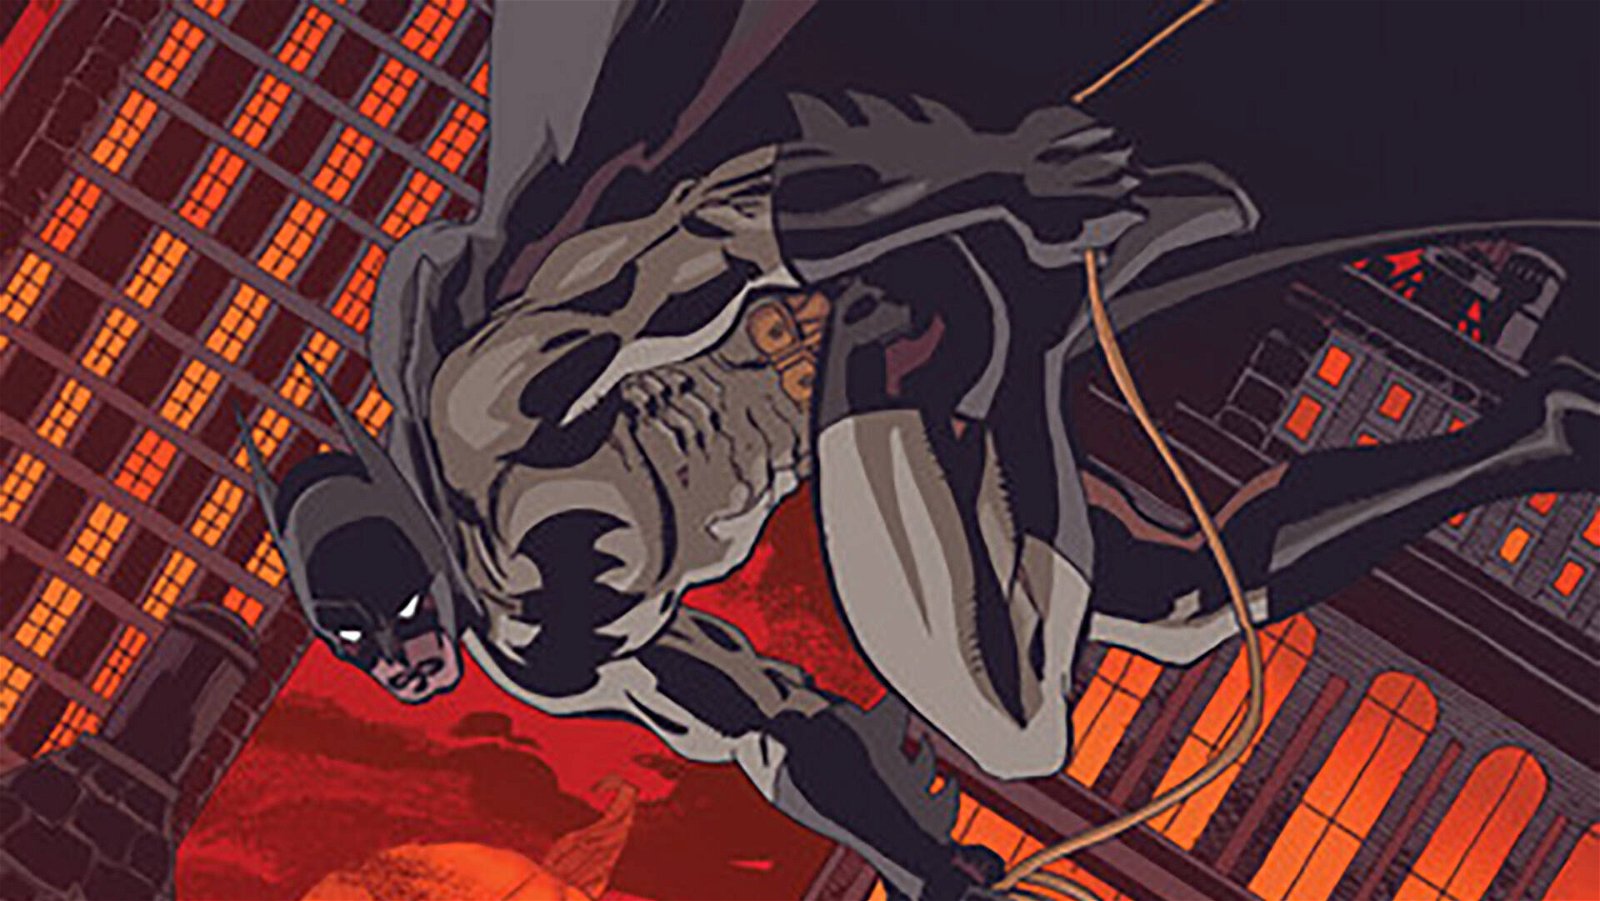 Immagine di Batman: The Long Halloween Special,  dettagli e data di uscita